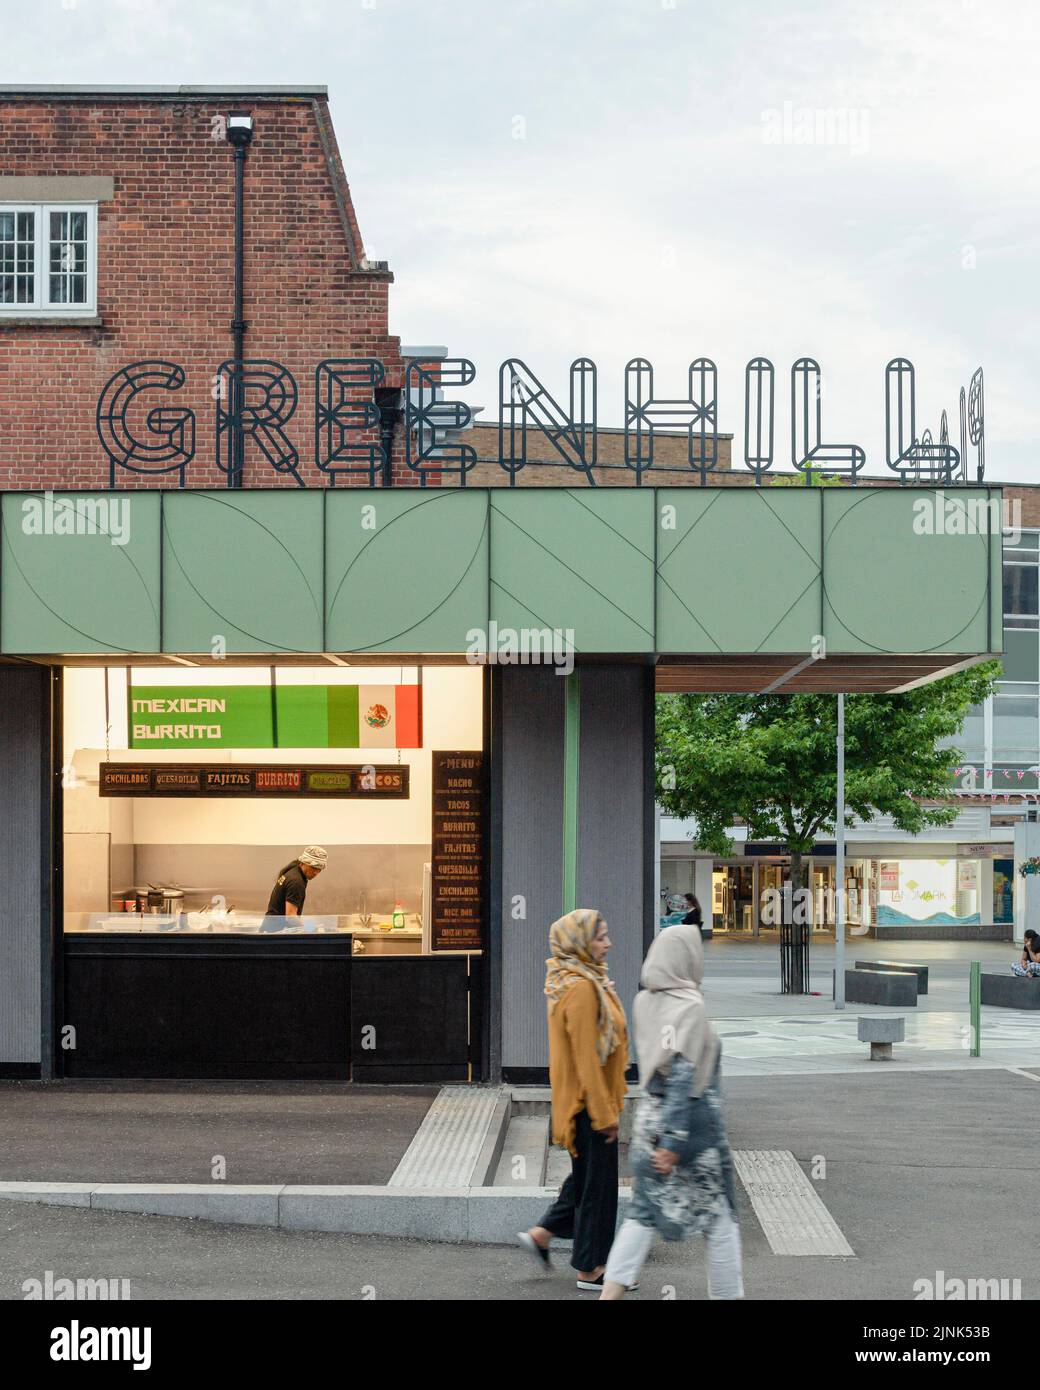 Mercato alimentare di strada. Greenhill Place, Harrow, Regno Unito. Architetto: CarverHaggard Architects, 2022. Foto Stock